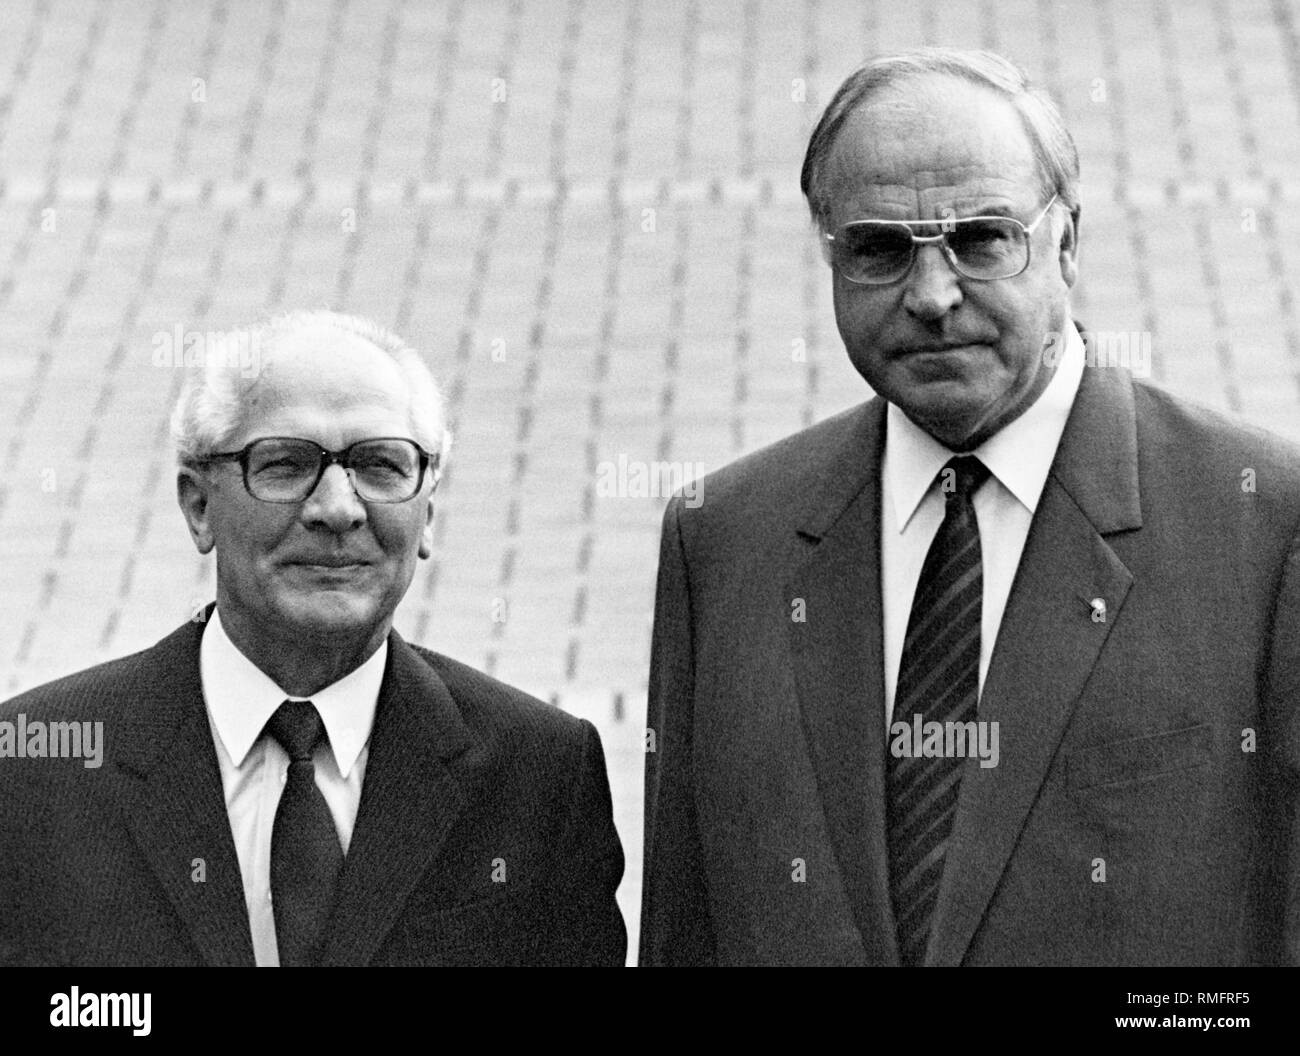 Bundeskanzler Helmut Kohl und Erich Honecker, Generalsekretär der DDR. Undatiertes Bild. Helmut Kohl, Politiker, Deutschland, CDU, DDR Stockfoto